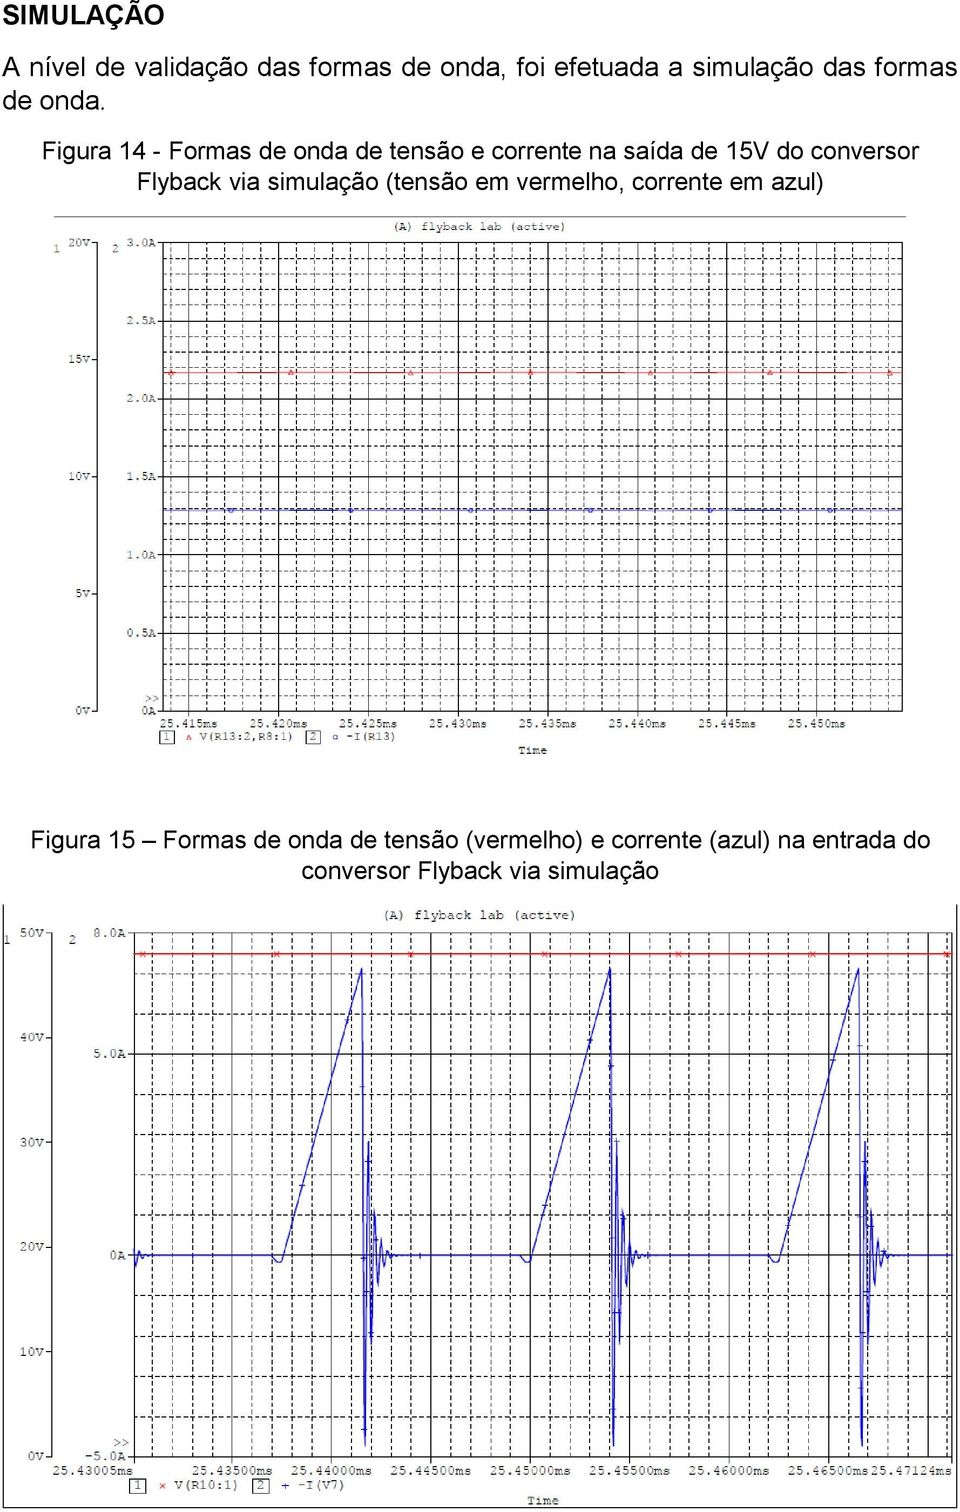 Figura 14 - Formas de onda de tensão e corrente na saída de 15V do conversor Flyback